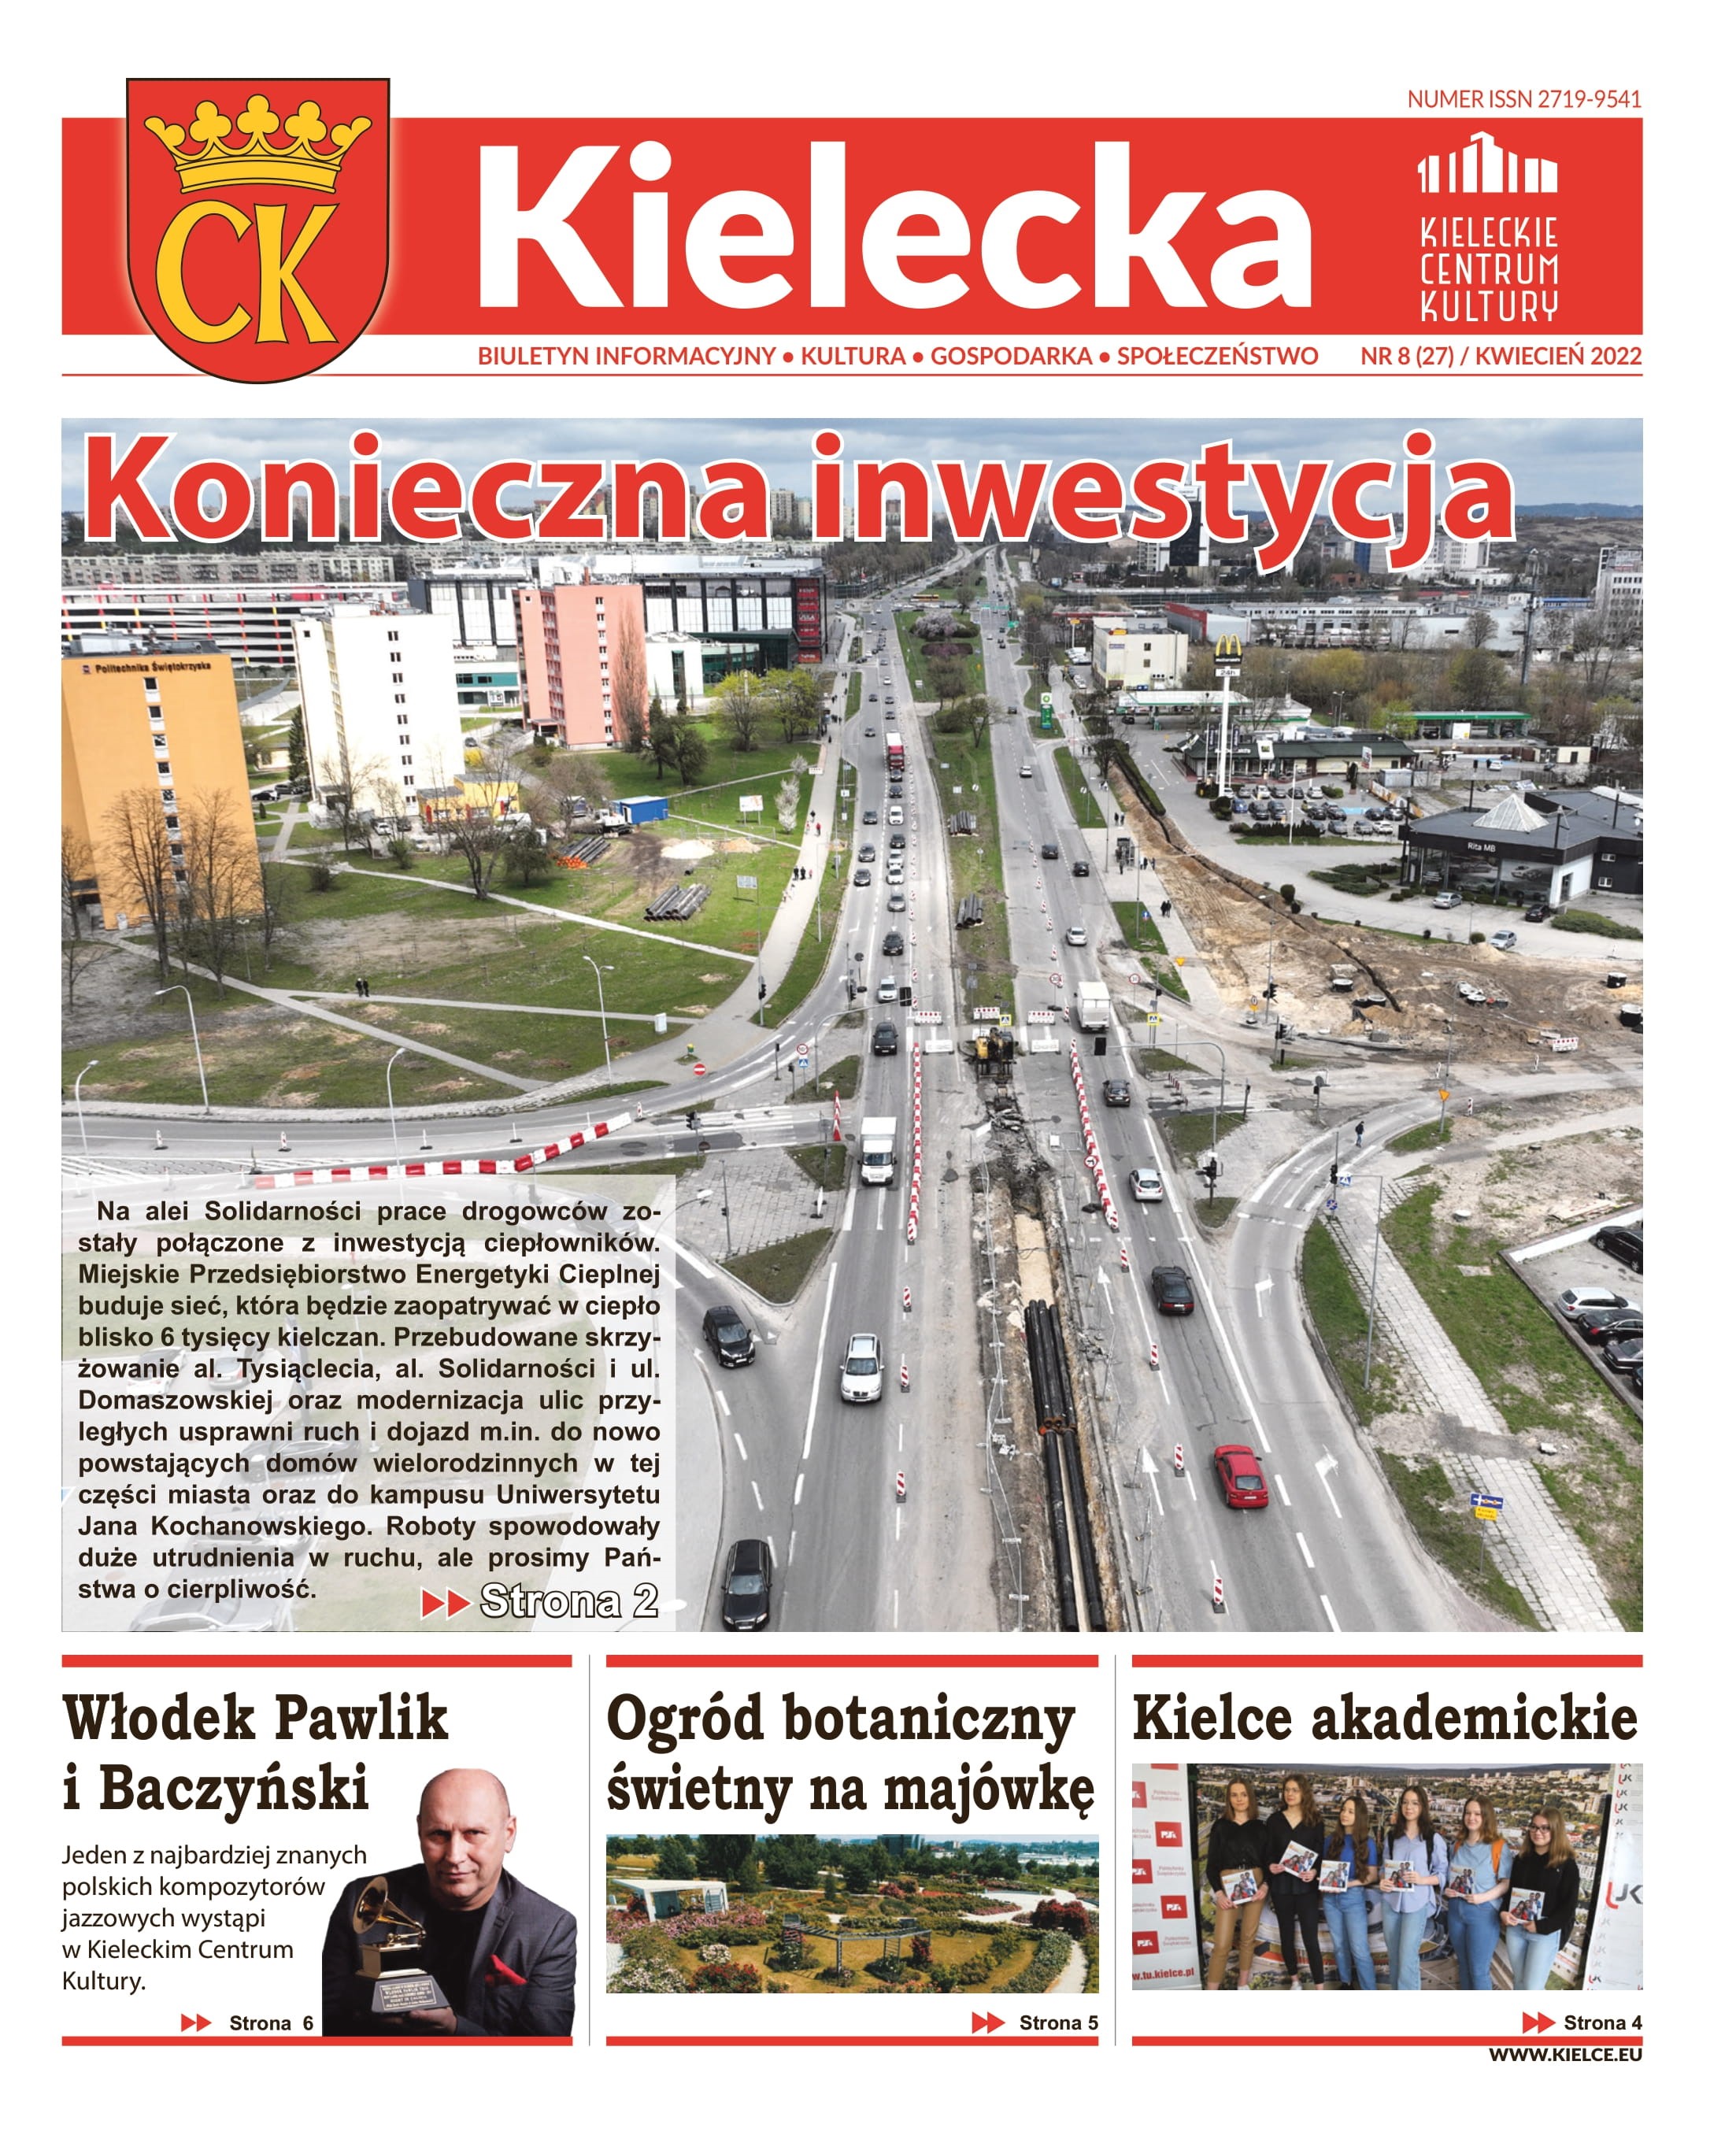 Kielecka_8-2022-internet-1.jpg